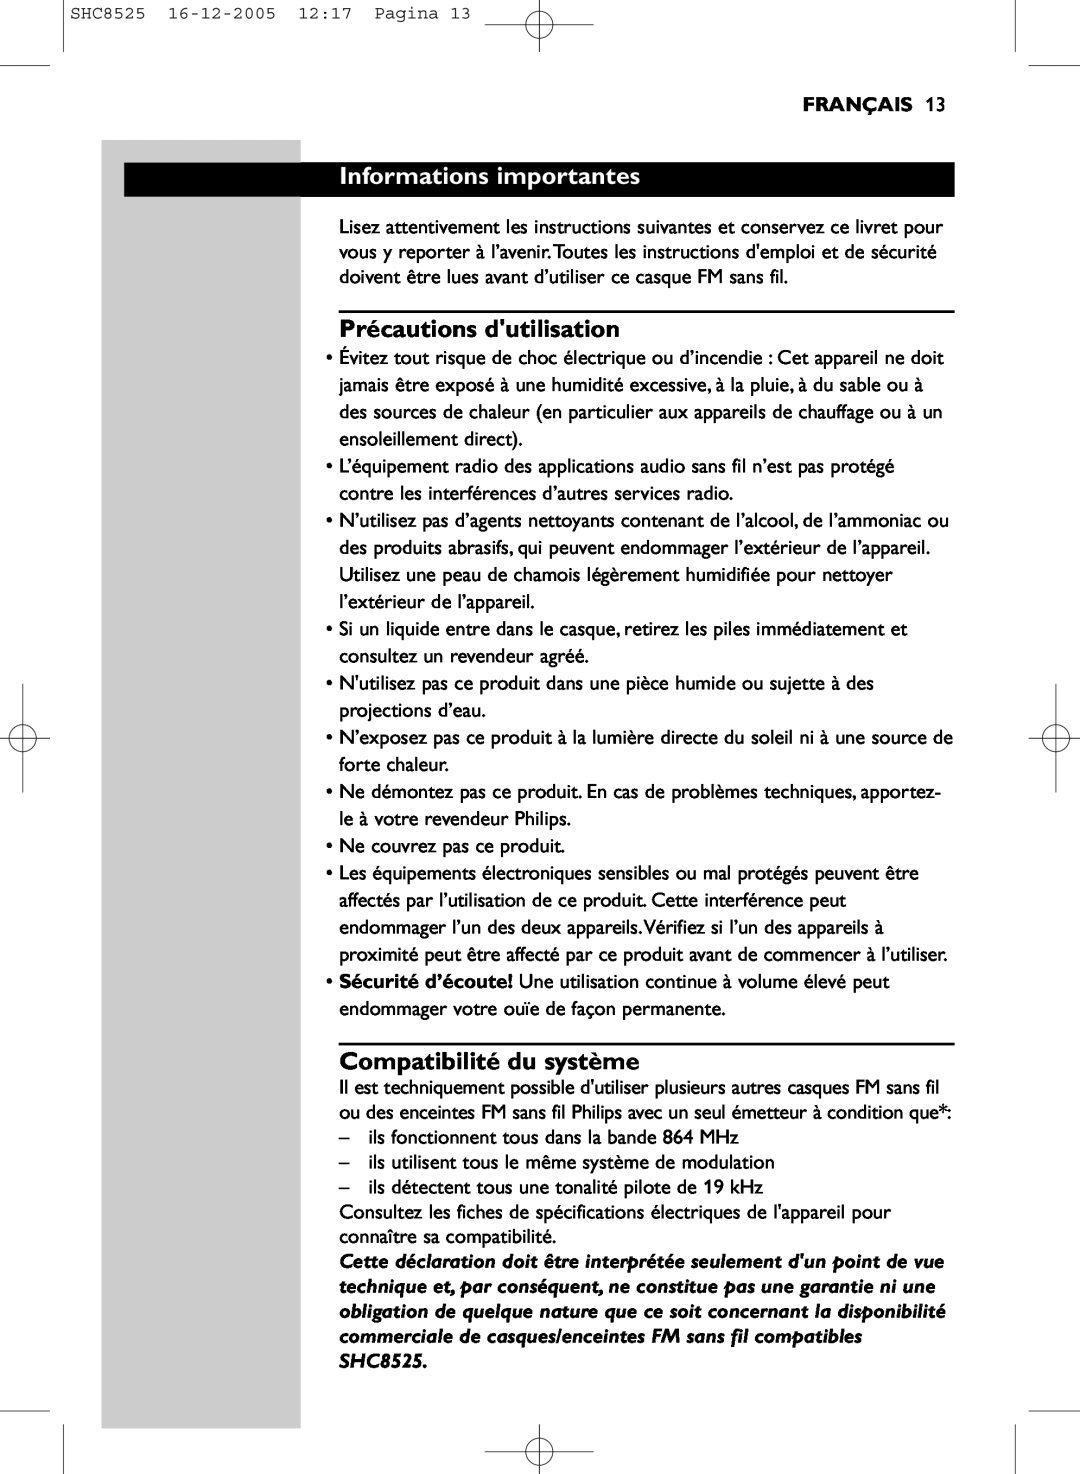 Event electronic SHC8525 manual Informations importantes, Précautions dutilisation, Compatibilité du système, Français 